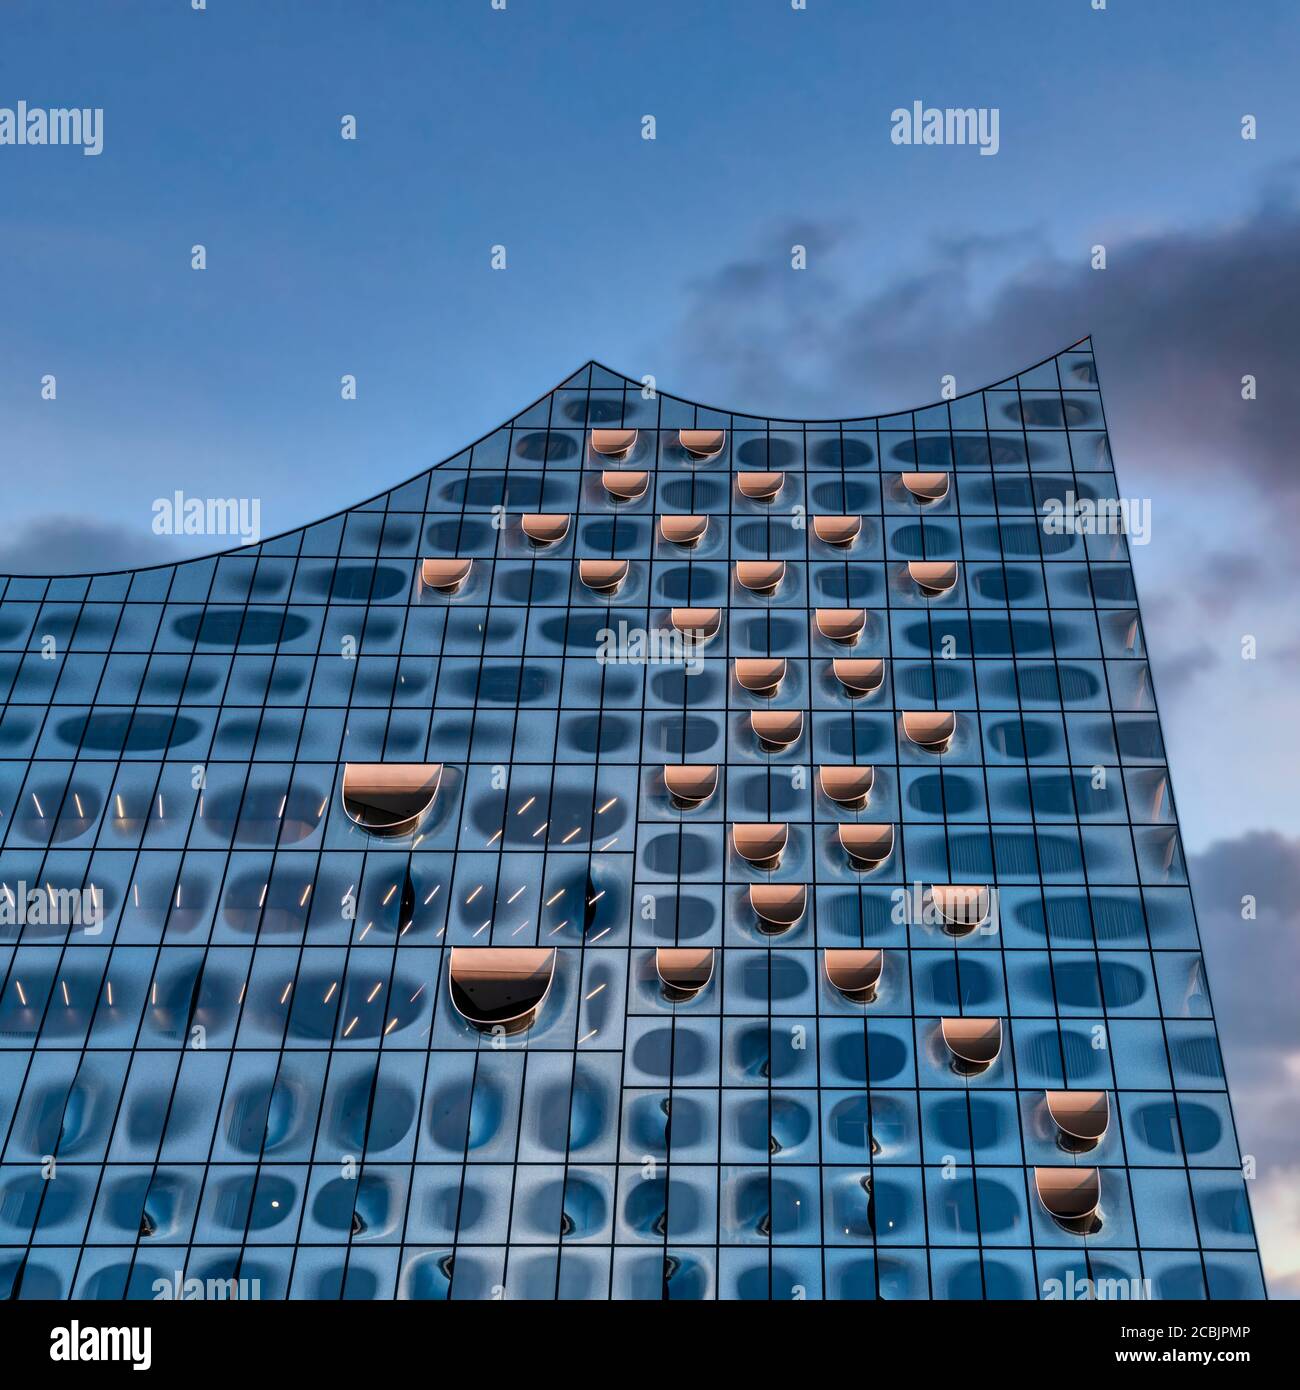 Elbphilharmonie zur Blauen Stunde, HafenCity, Speicherstadt, Hamburg, Deutschland, Europa Stockfoto